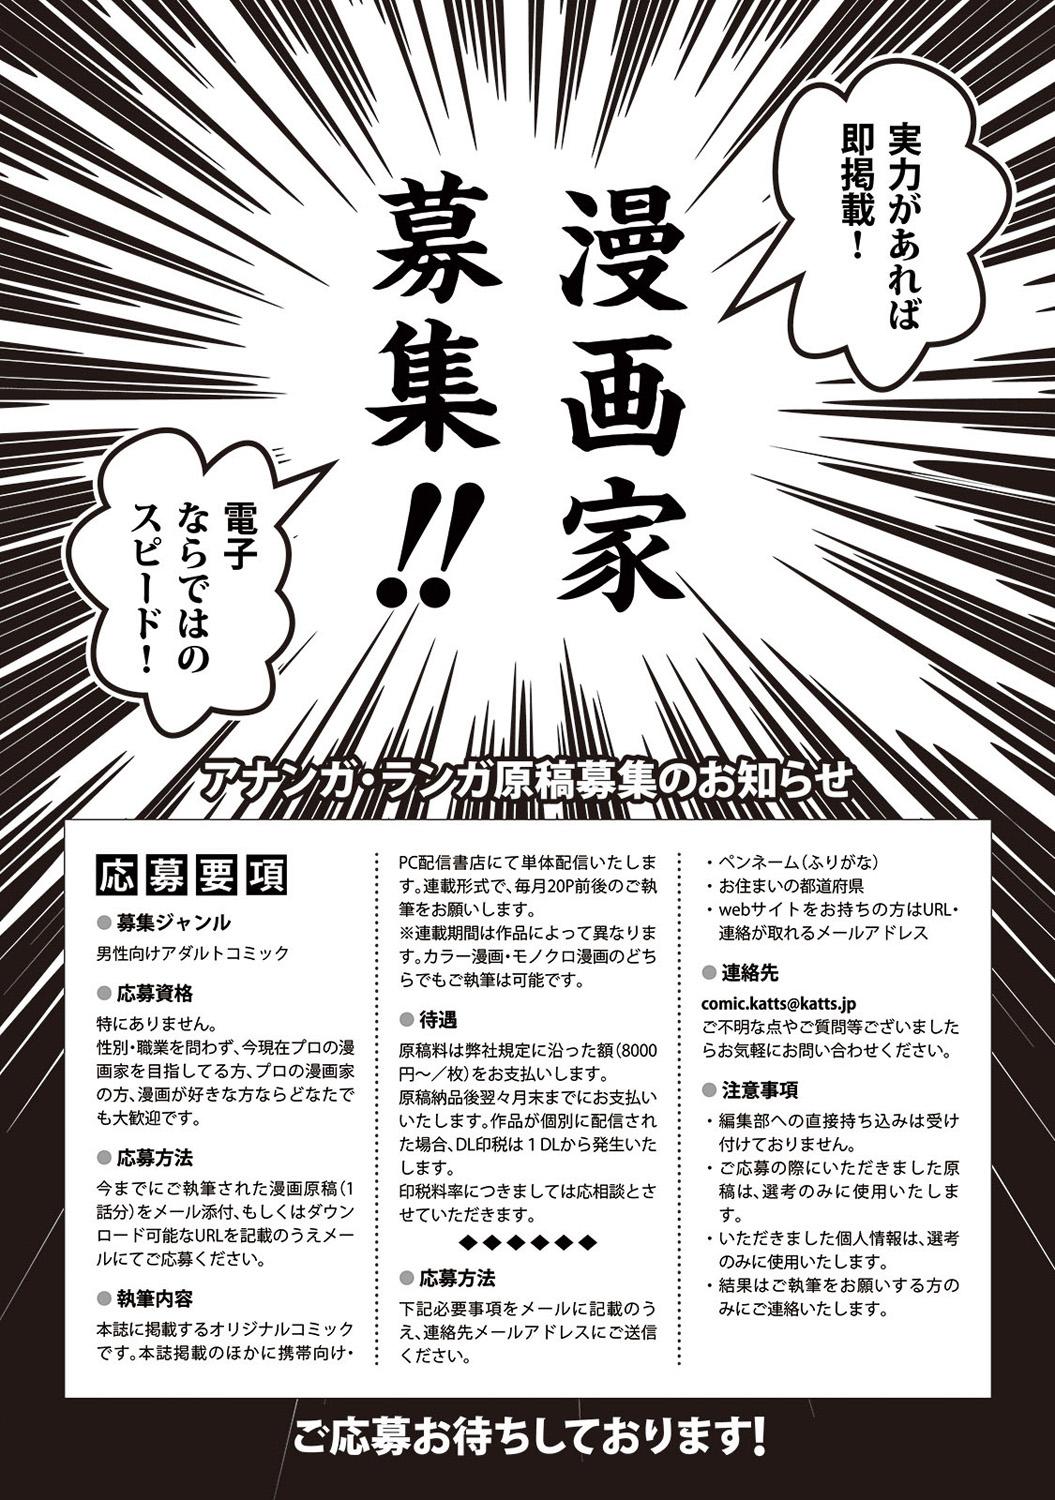 Nudist COMIC Ananga Ranga Vol. 12 Anime - Page 262